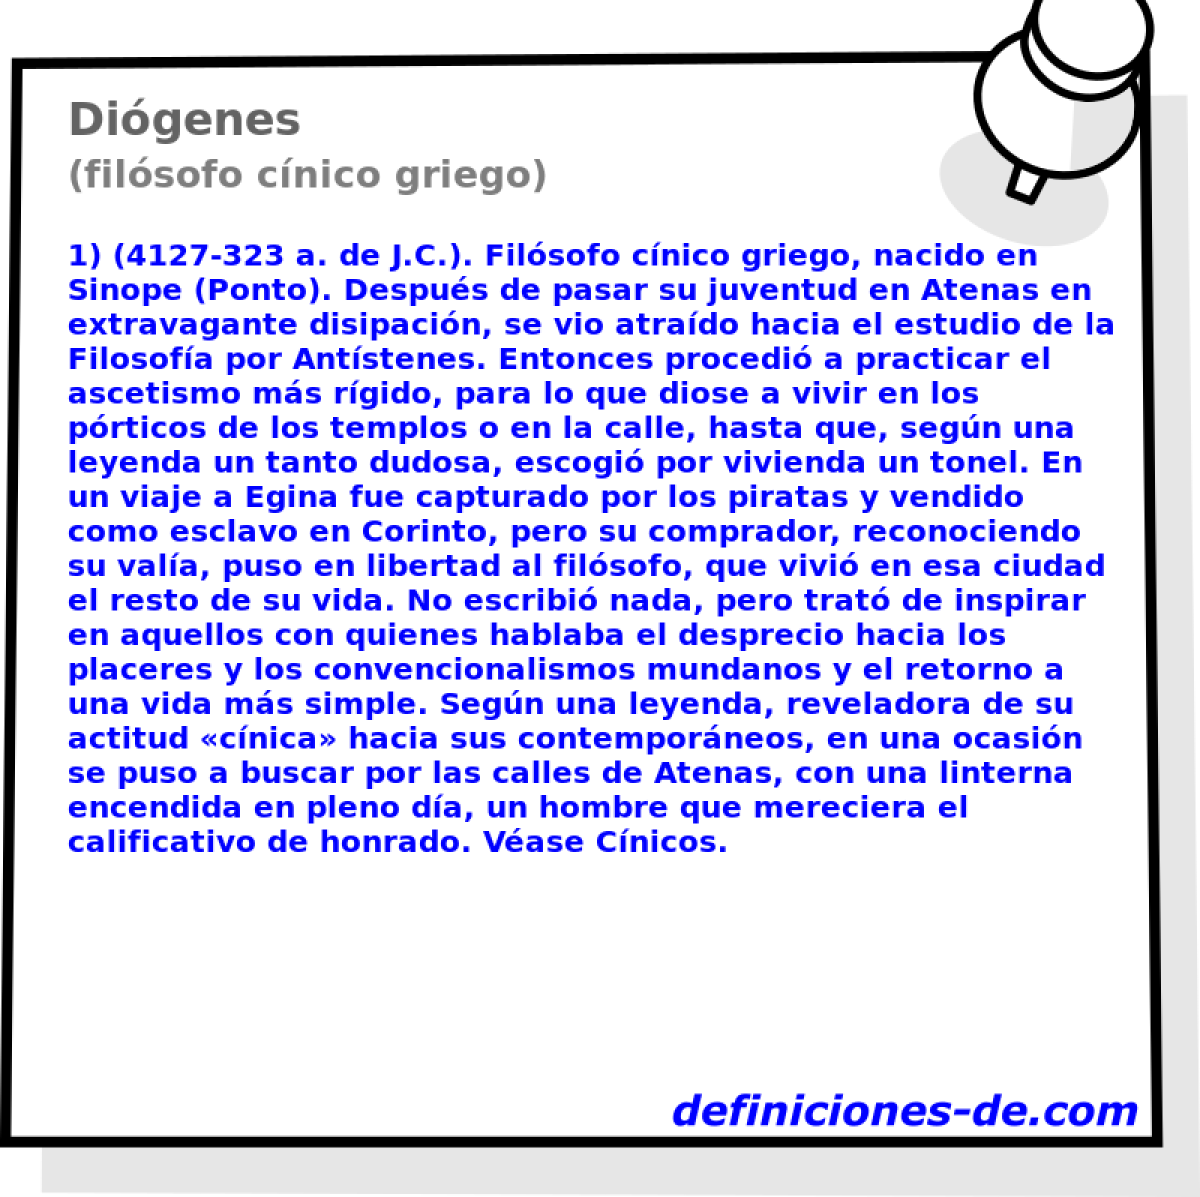 Digenes (filsofo cnico griego)